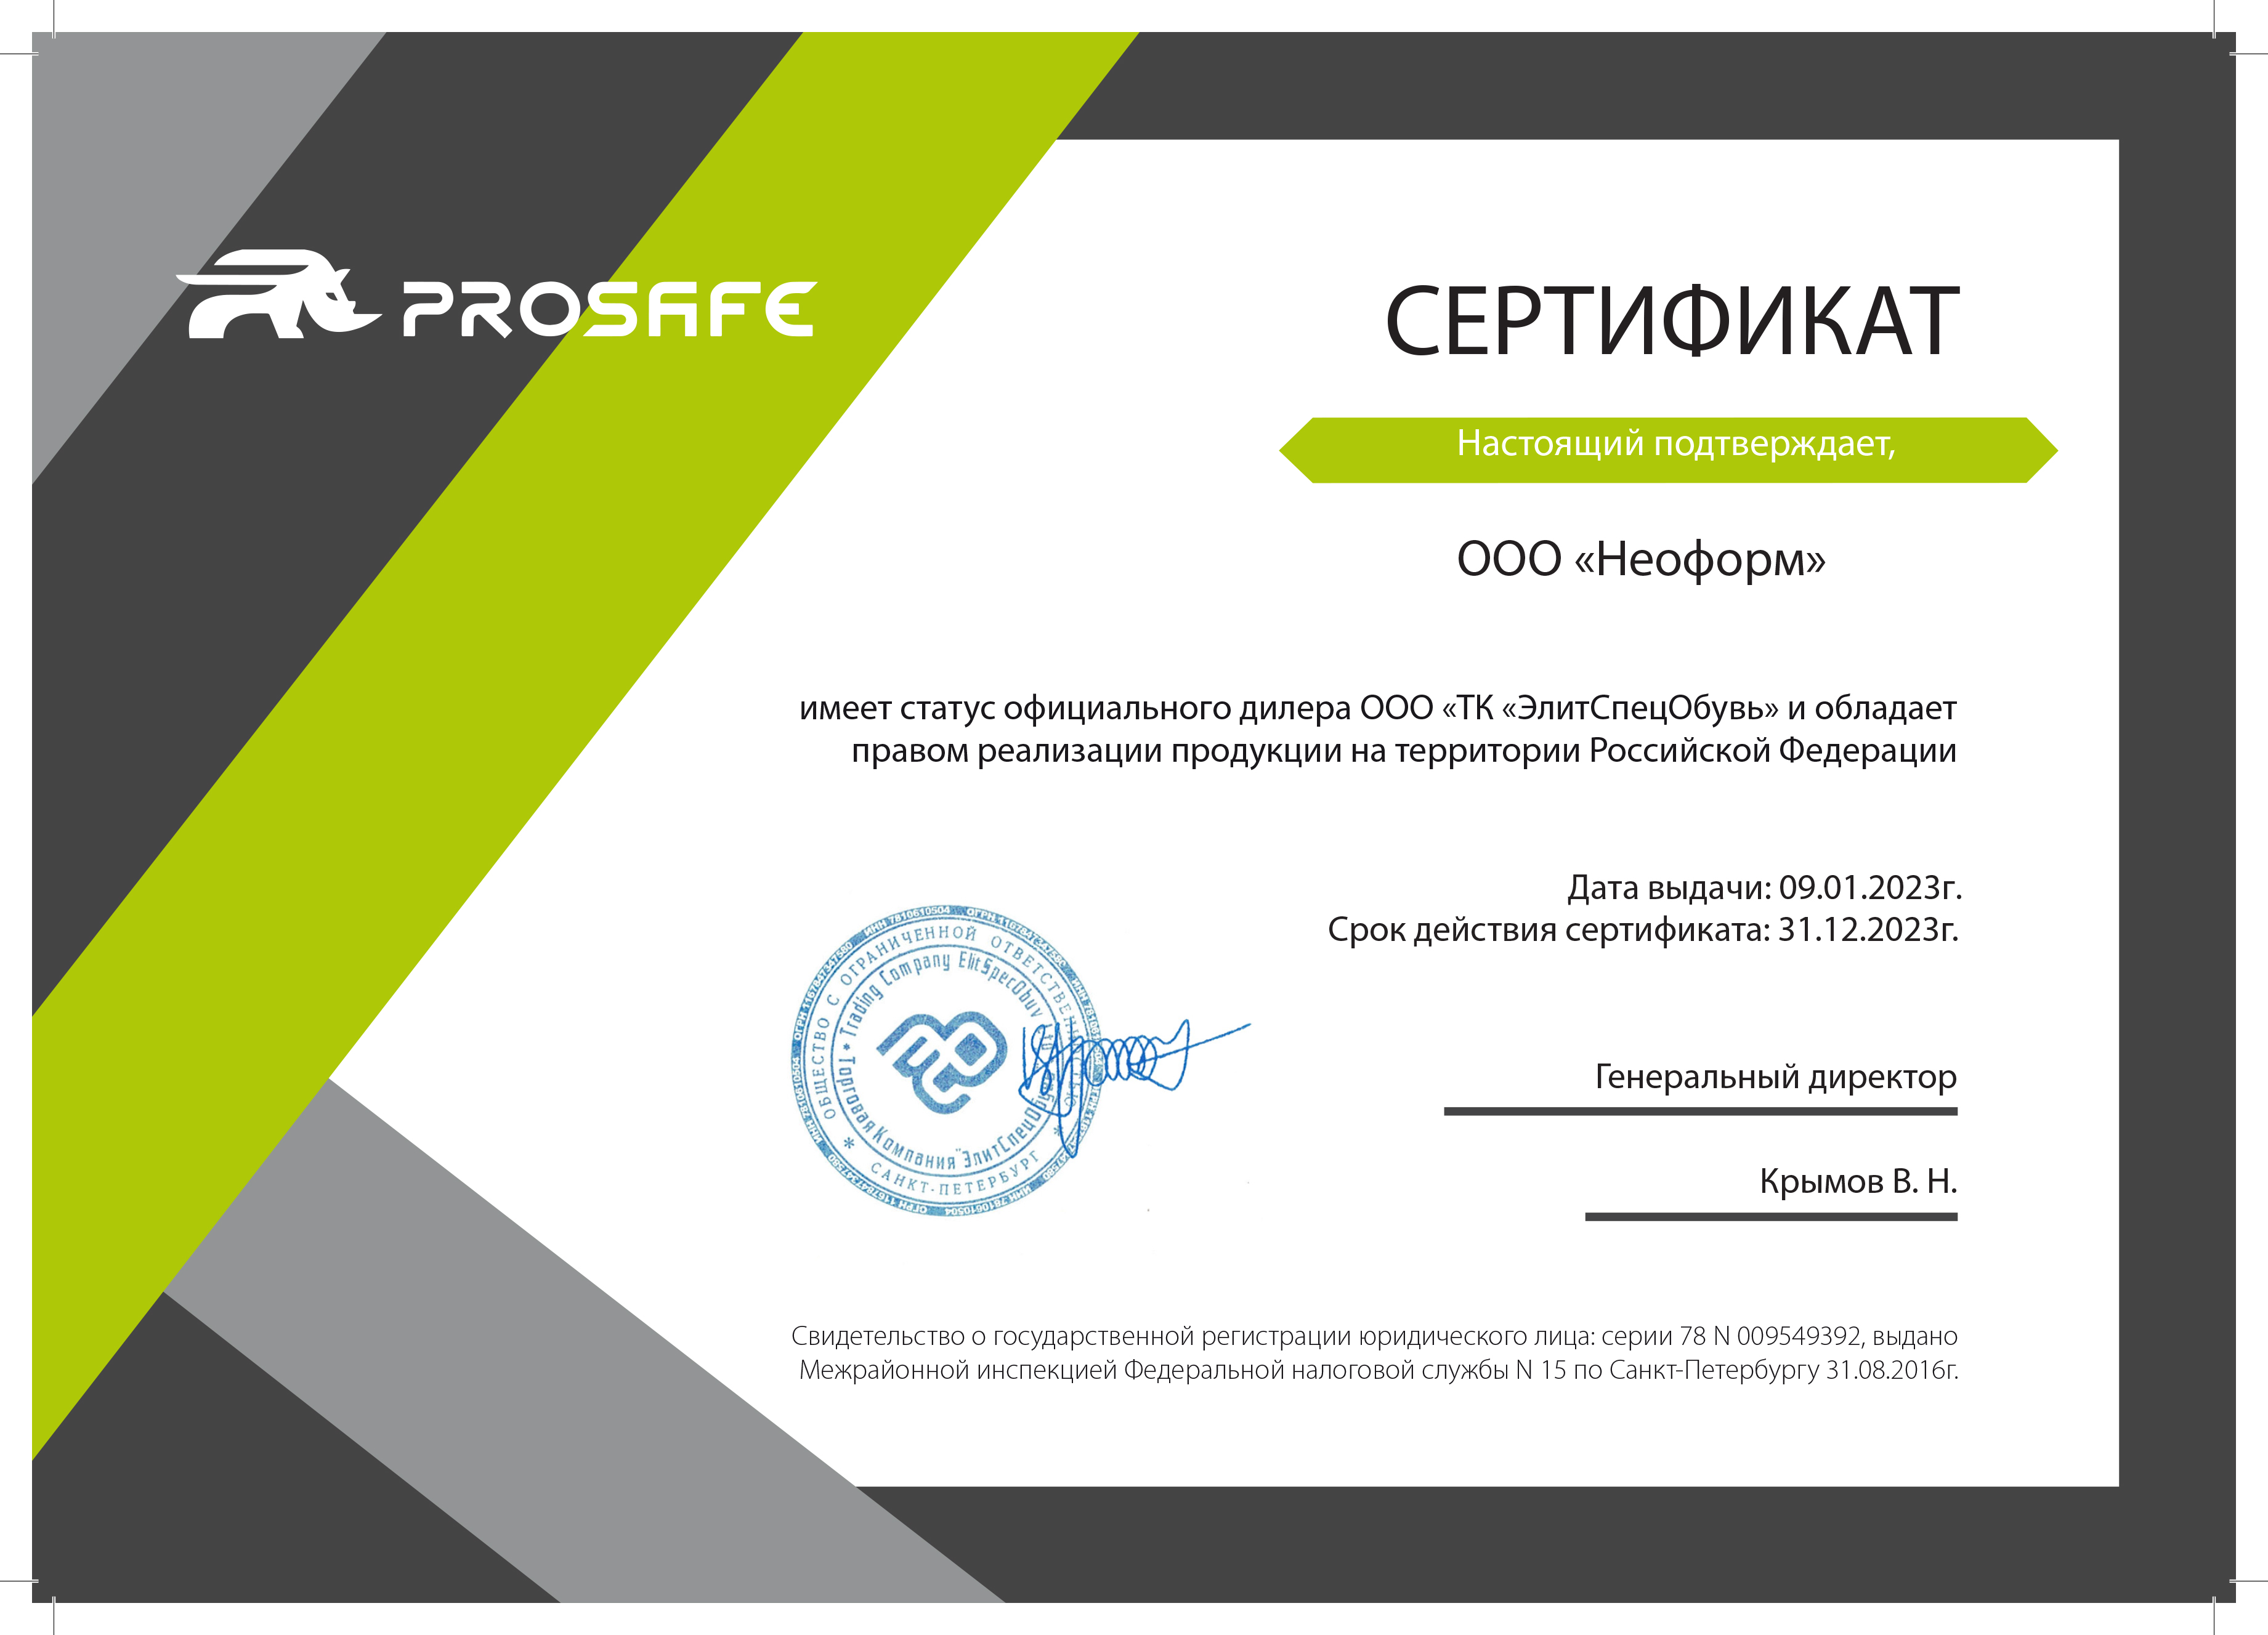 Сертификат дилера ЭлитСпецОбувь